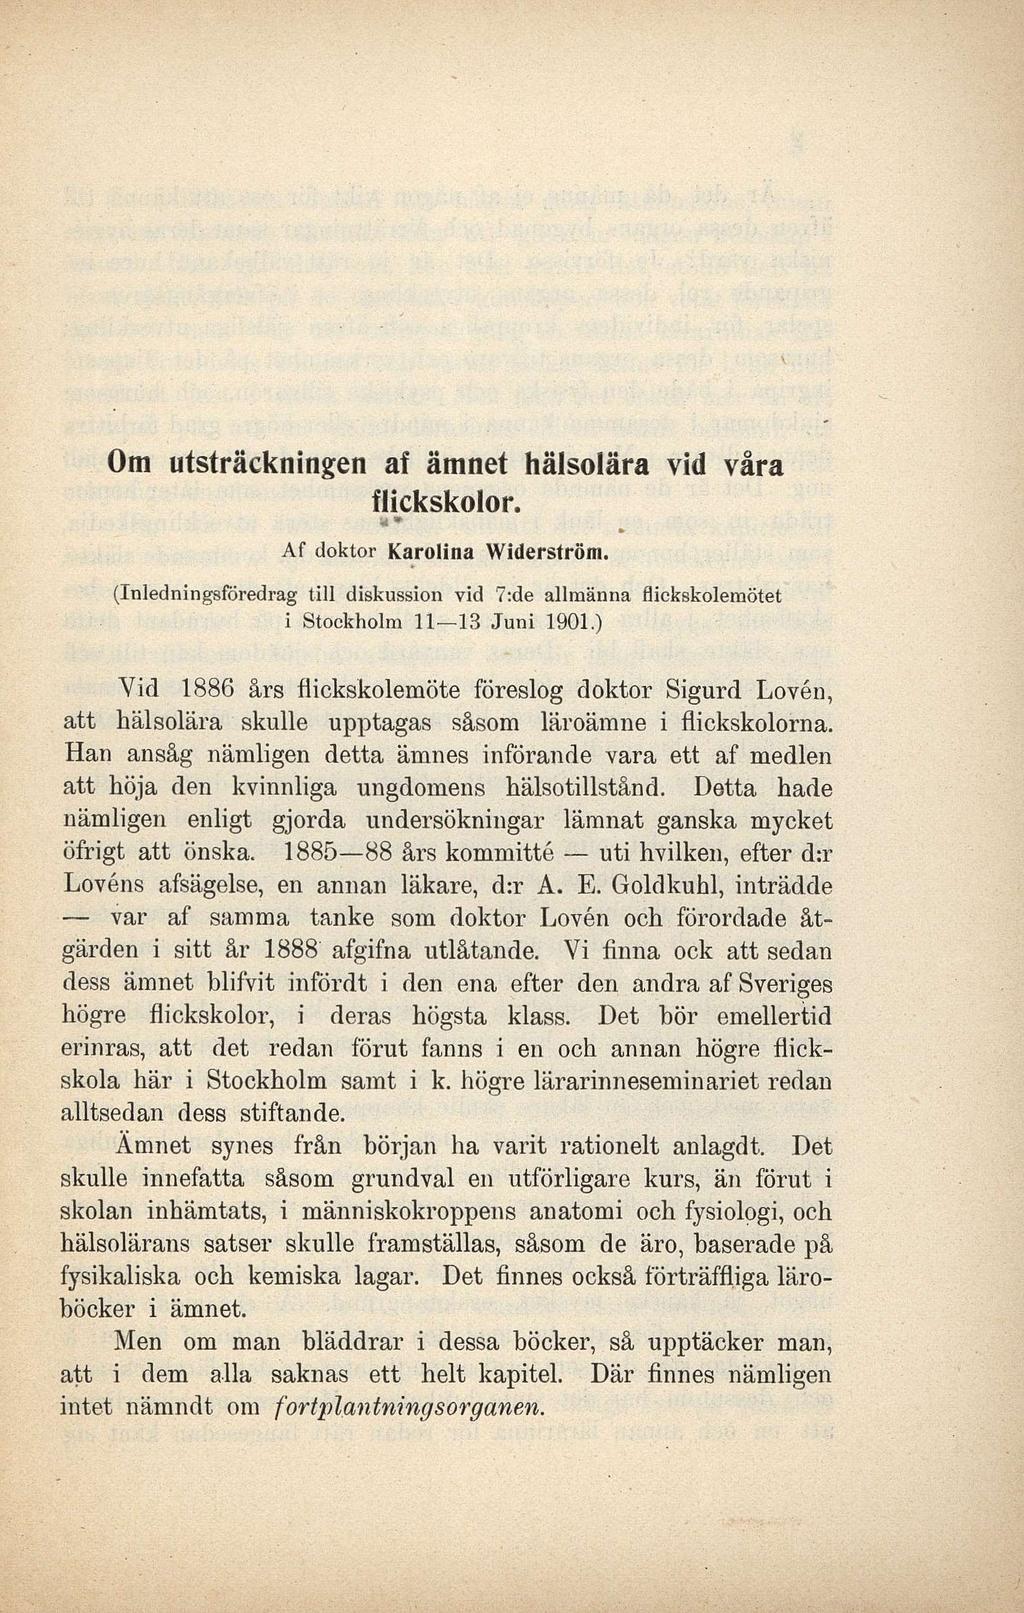 Om utsträckningen af ämnet hälsolära vid våra flickskolor. u * Af doktor Karolina Widerström. (Inledningsföredrag till diskussion vid 7:de allmänna flickskolemötet i Stockholm 11 13 Juni 1901.